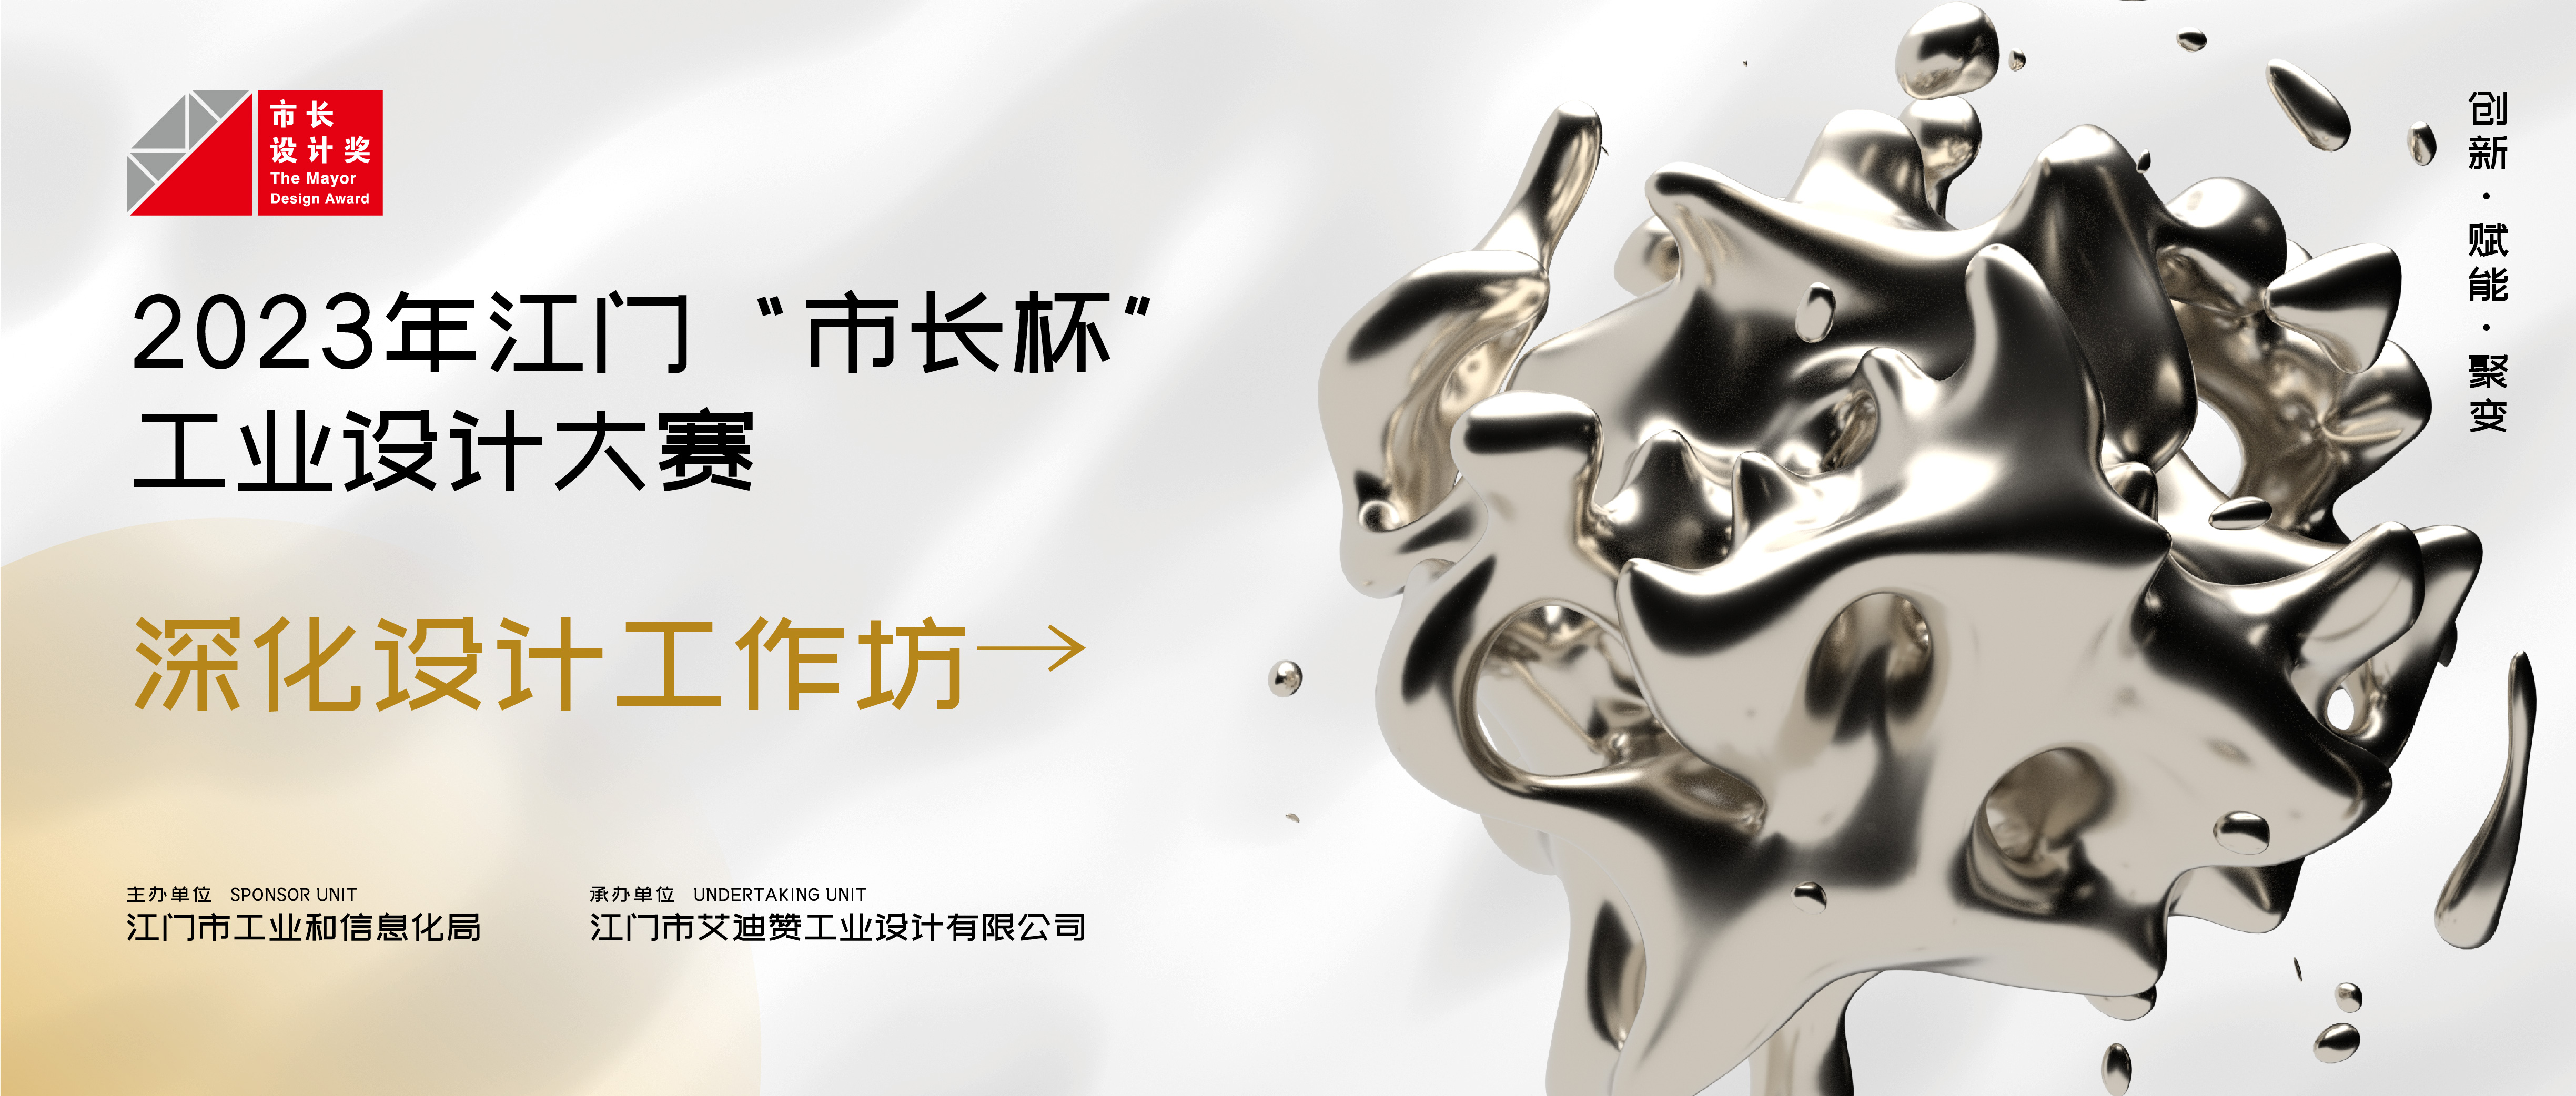 在线报名丨2023年江门“市长杯”工业设计大赛深化设计工作坊